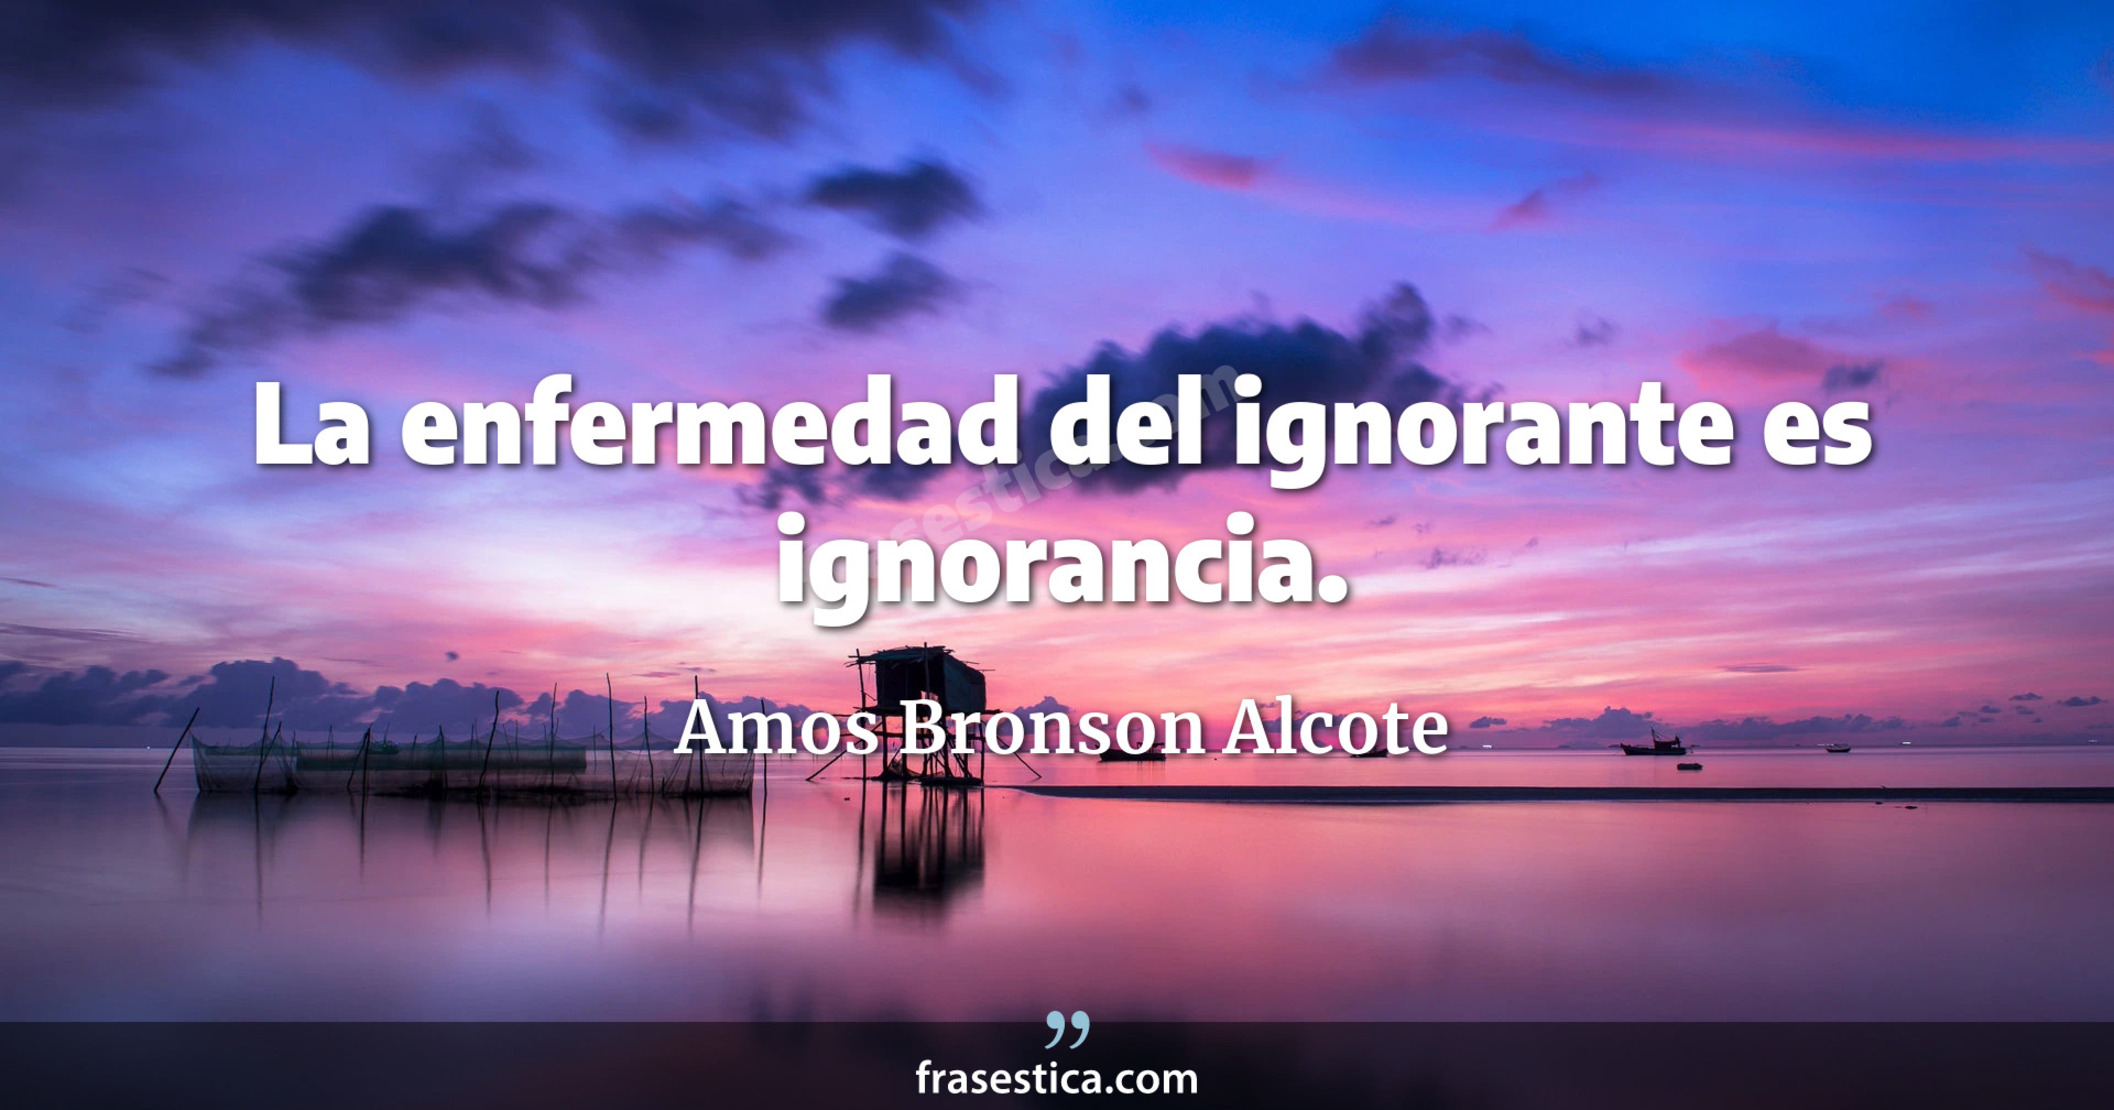 La enfermedad del ignorante es ignorancia. - Amos Bronson Alcote